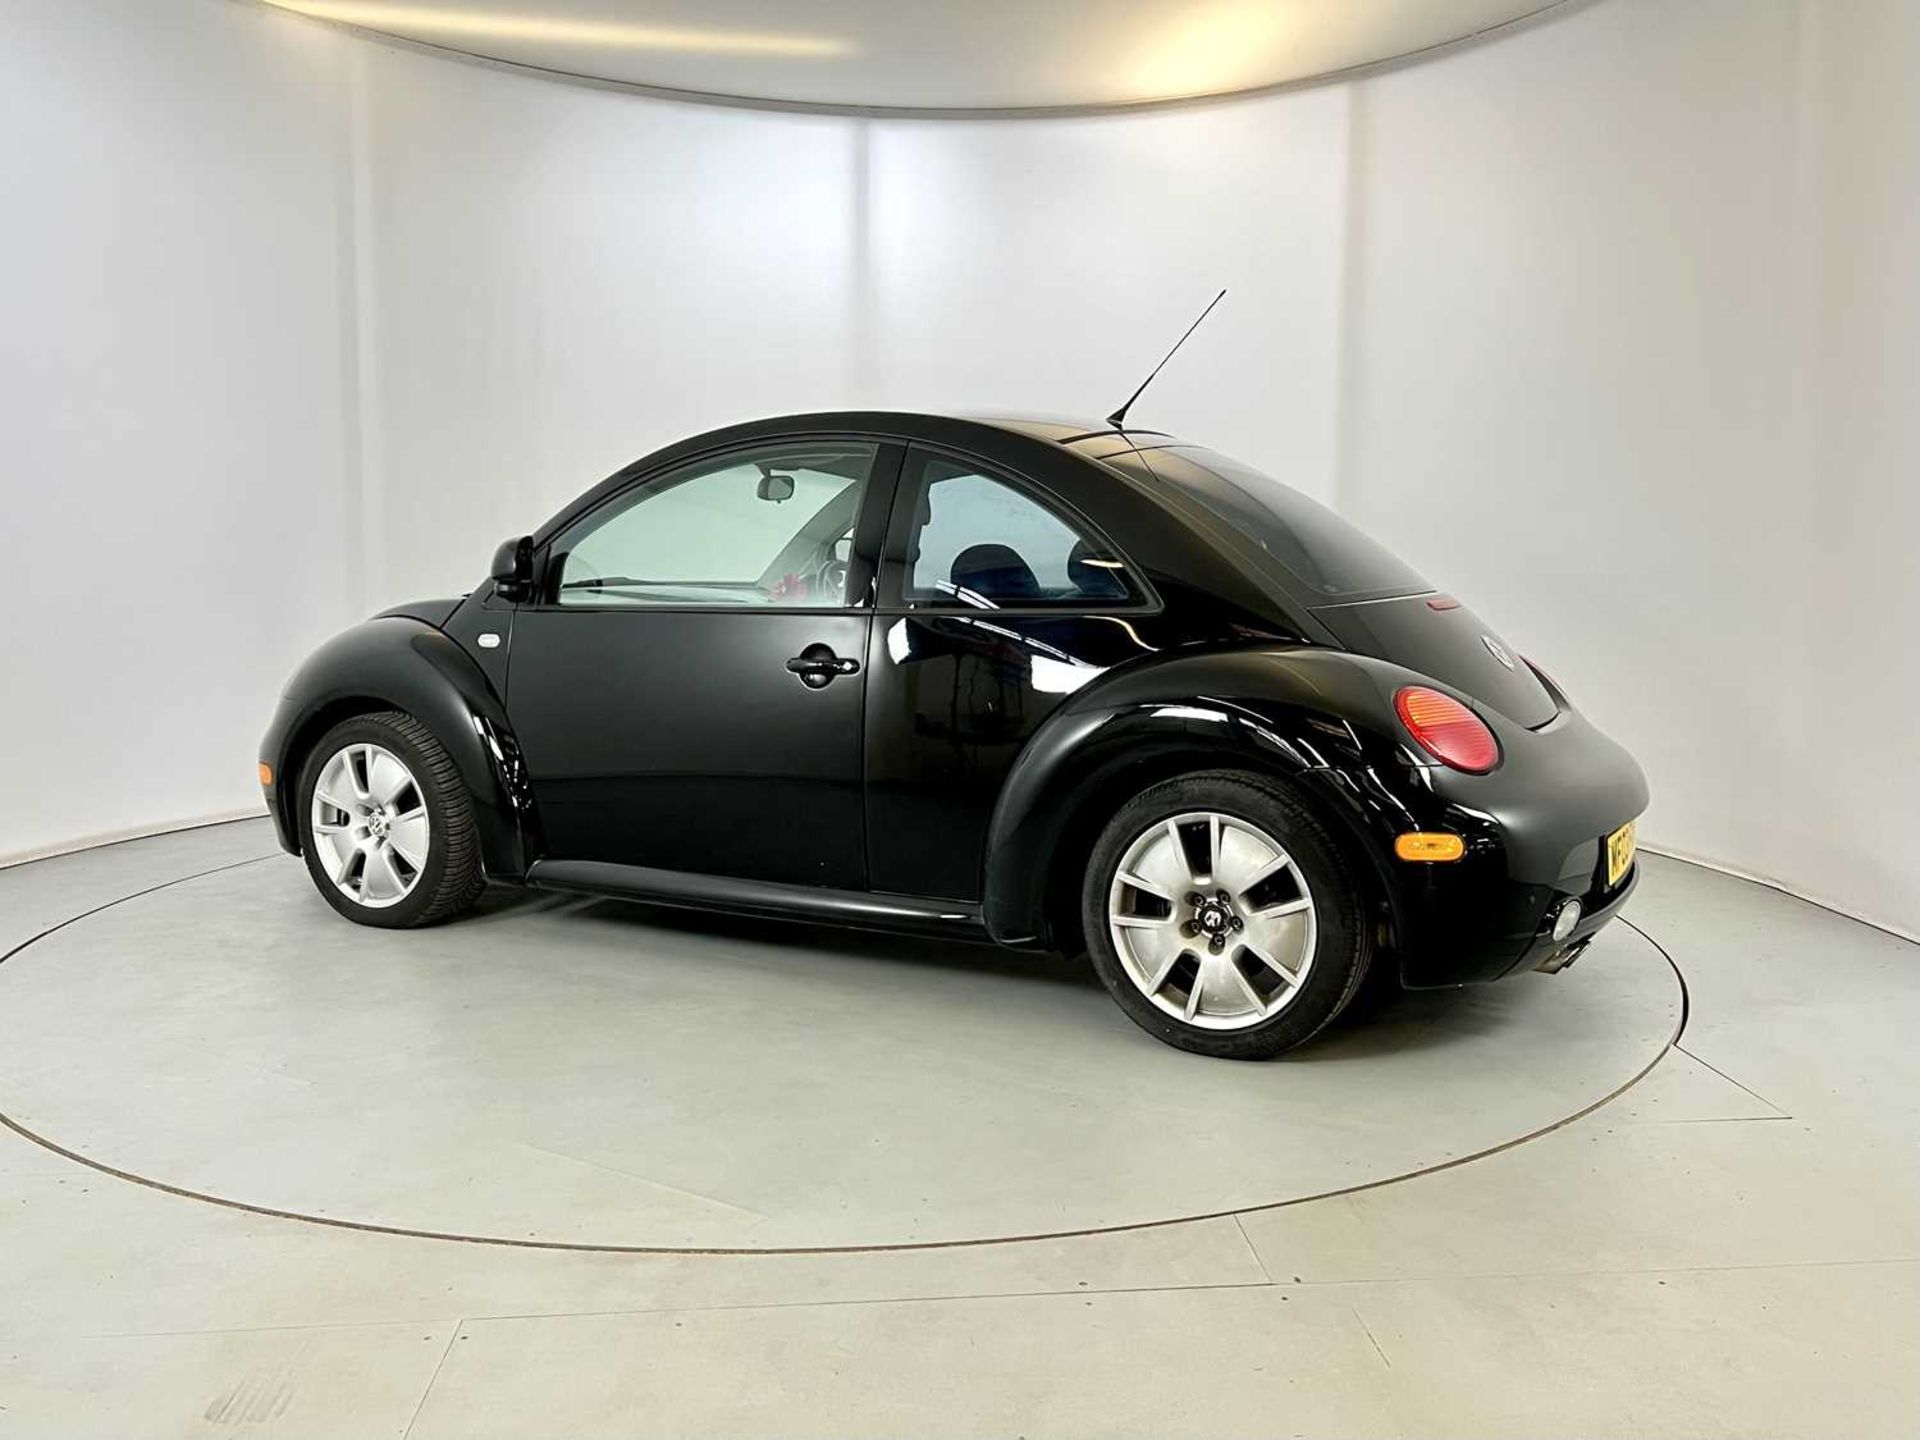 2003 Volkswagen Beetle V5 1 of 500 UK V5 models - Image 6 of 29